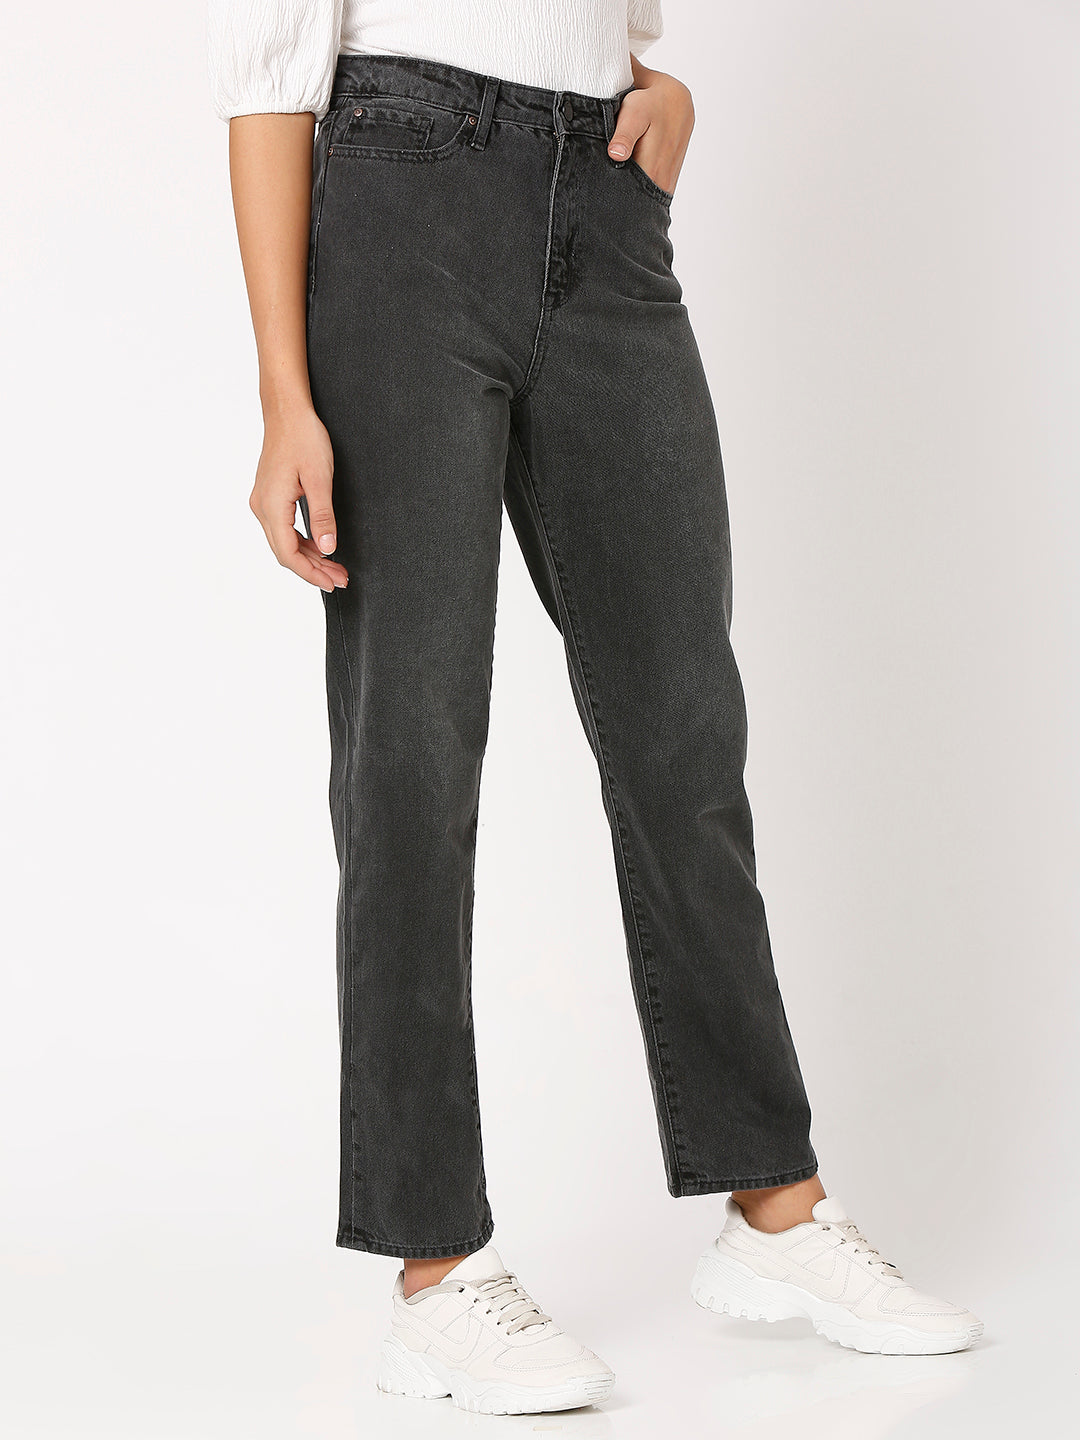 Spykar Black Straight Fit Regular Length Jeans For Women (Bella)